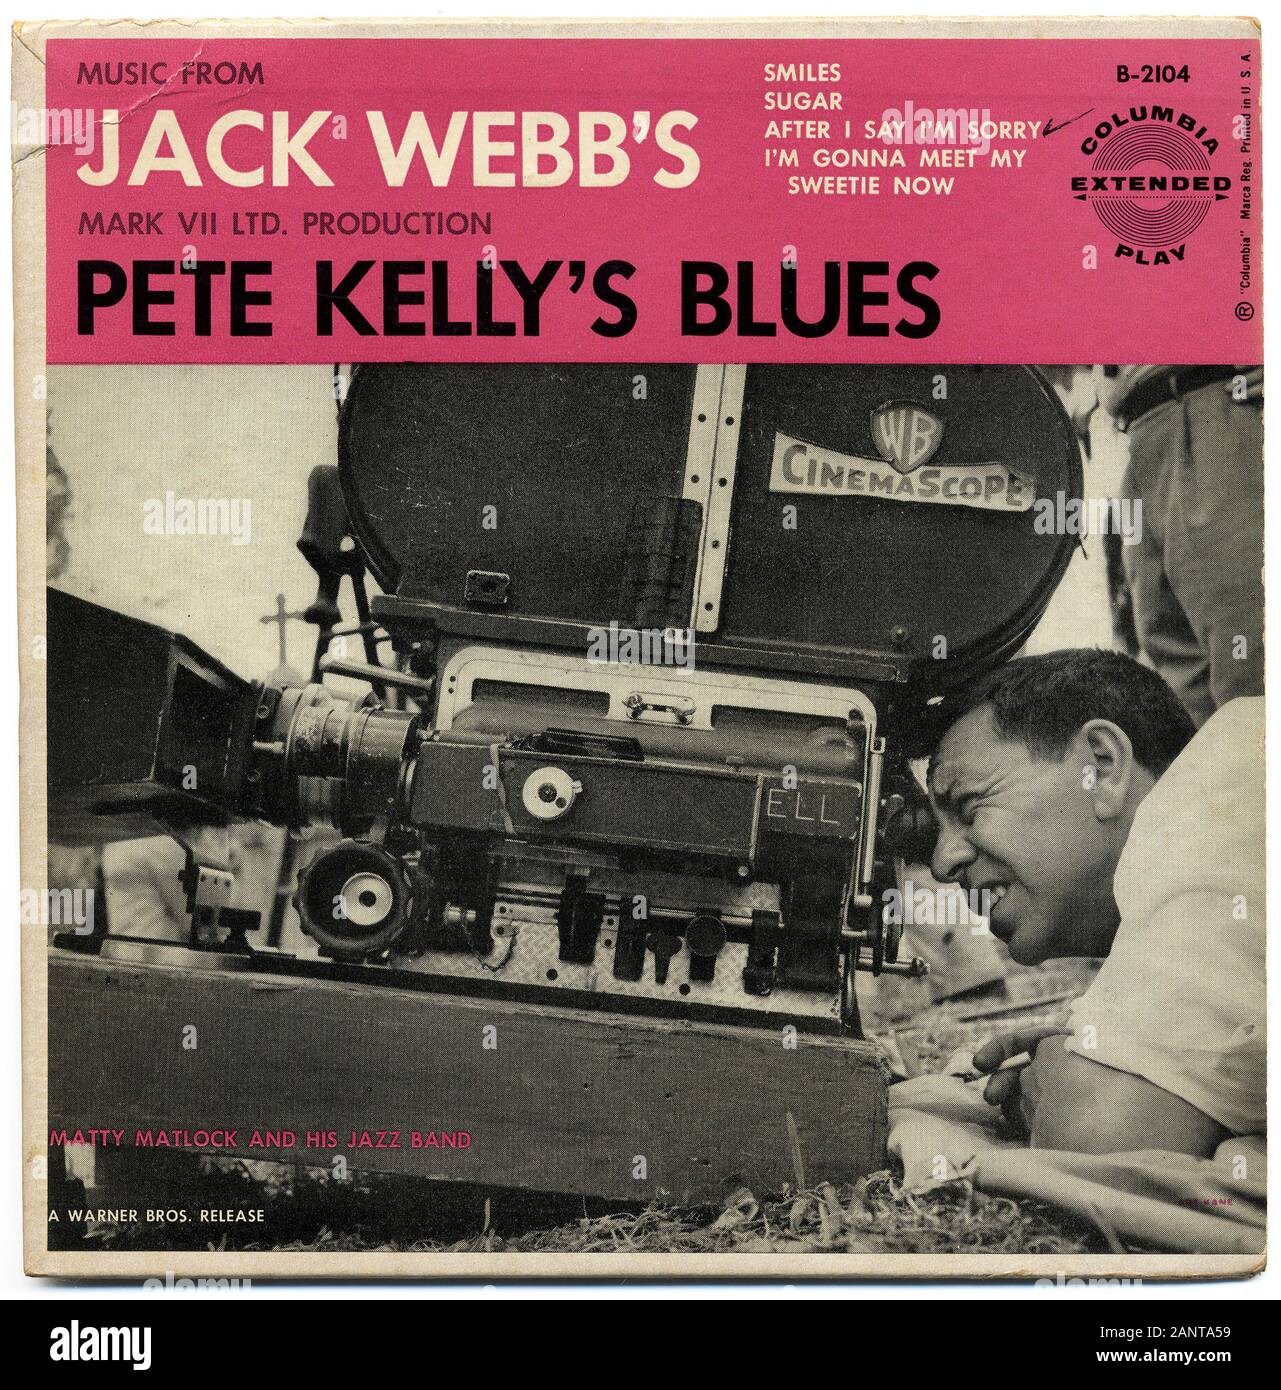 La musique de Jack Webb's Pete Kelly's Blues - album vinyle vintage classique Banque D'Images